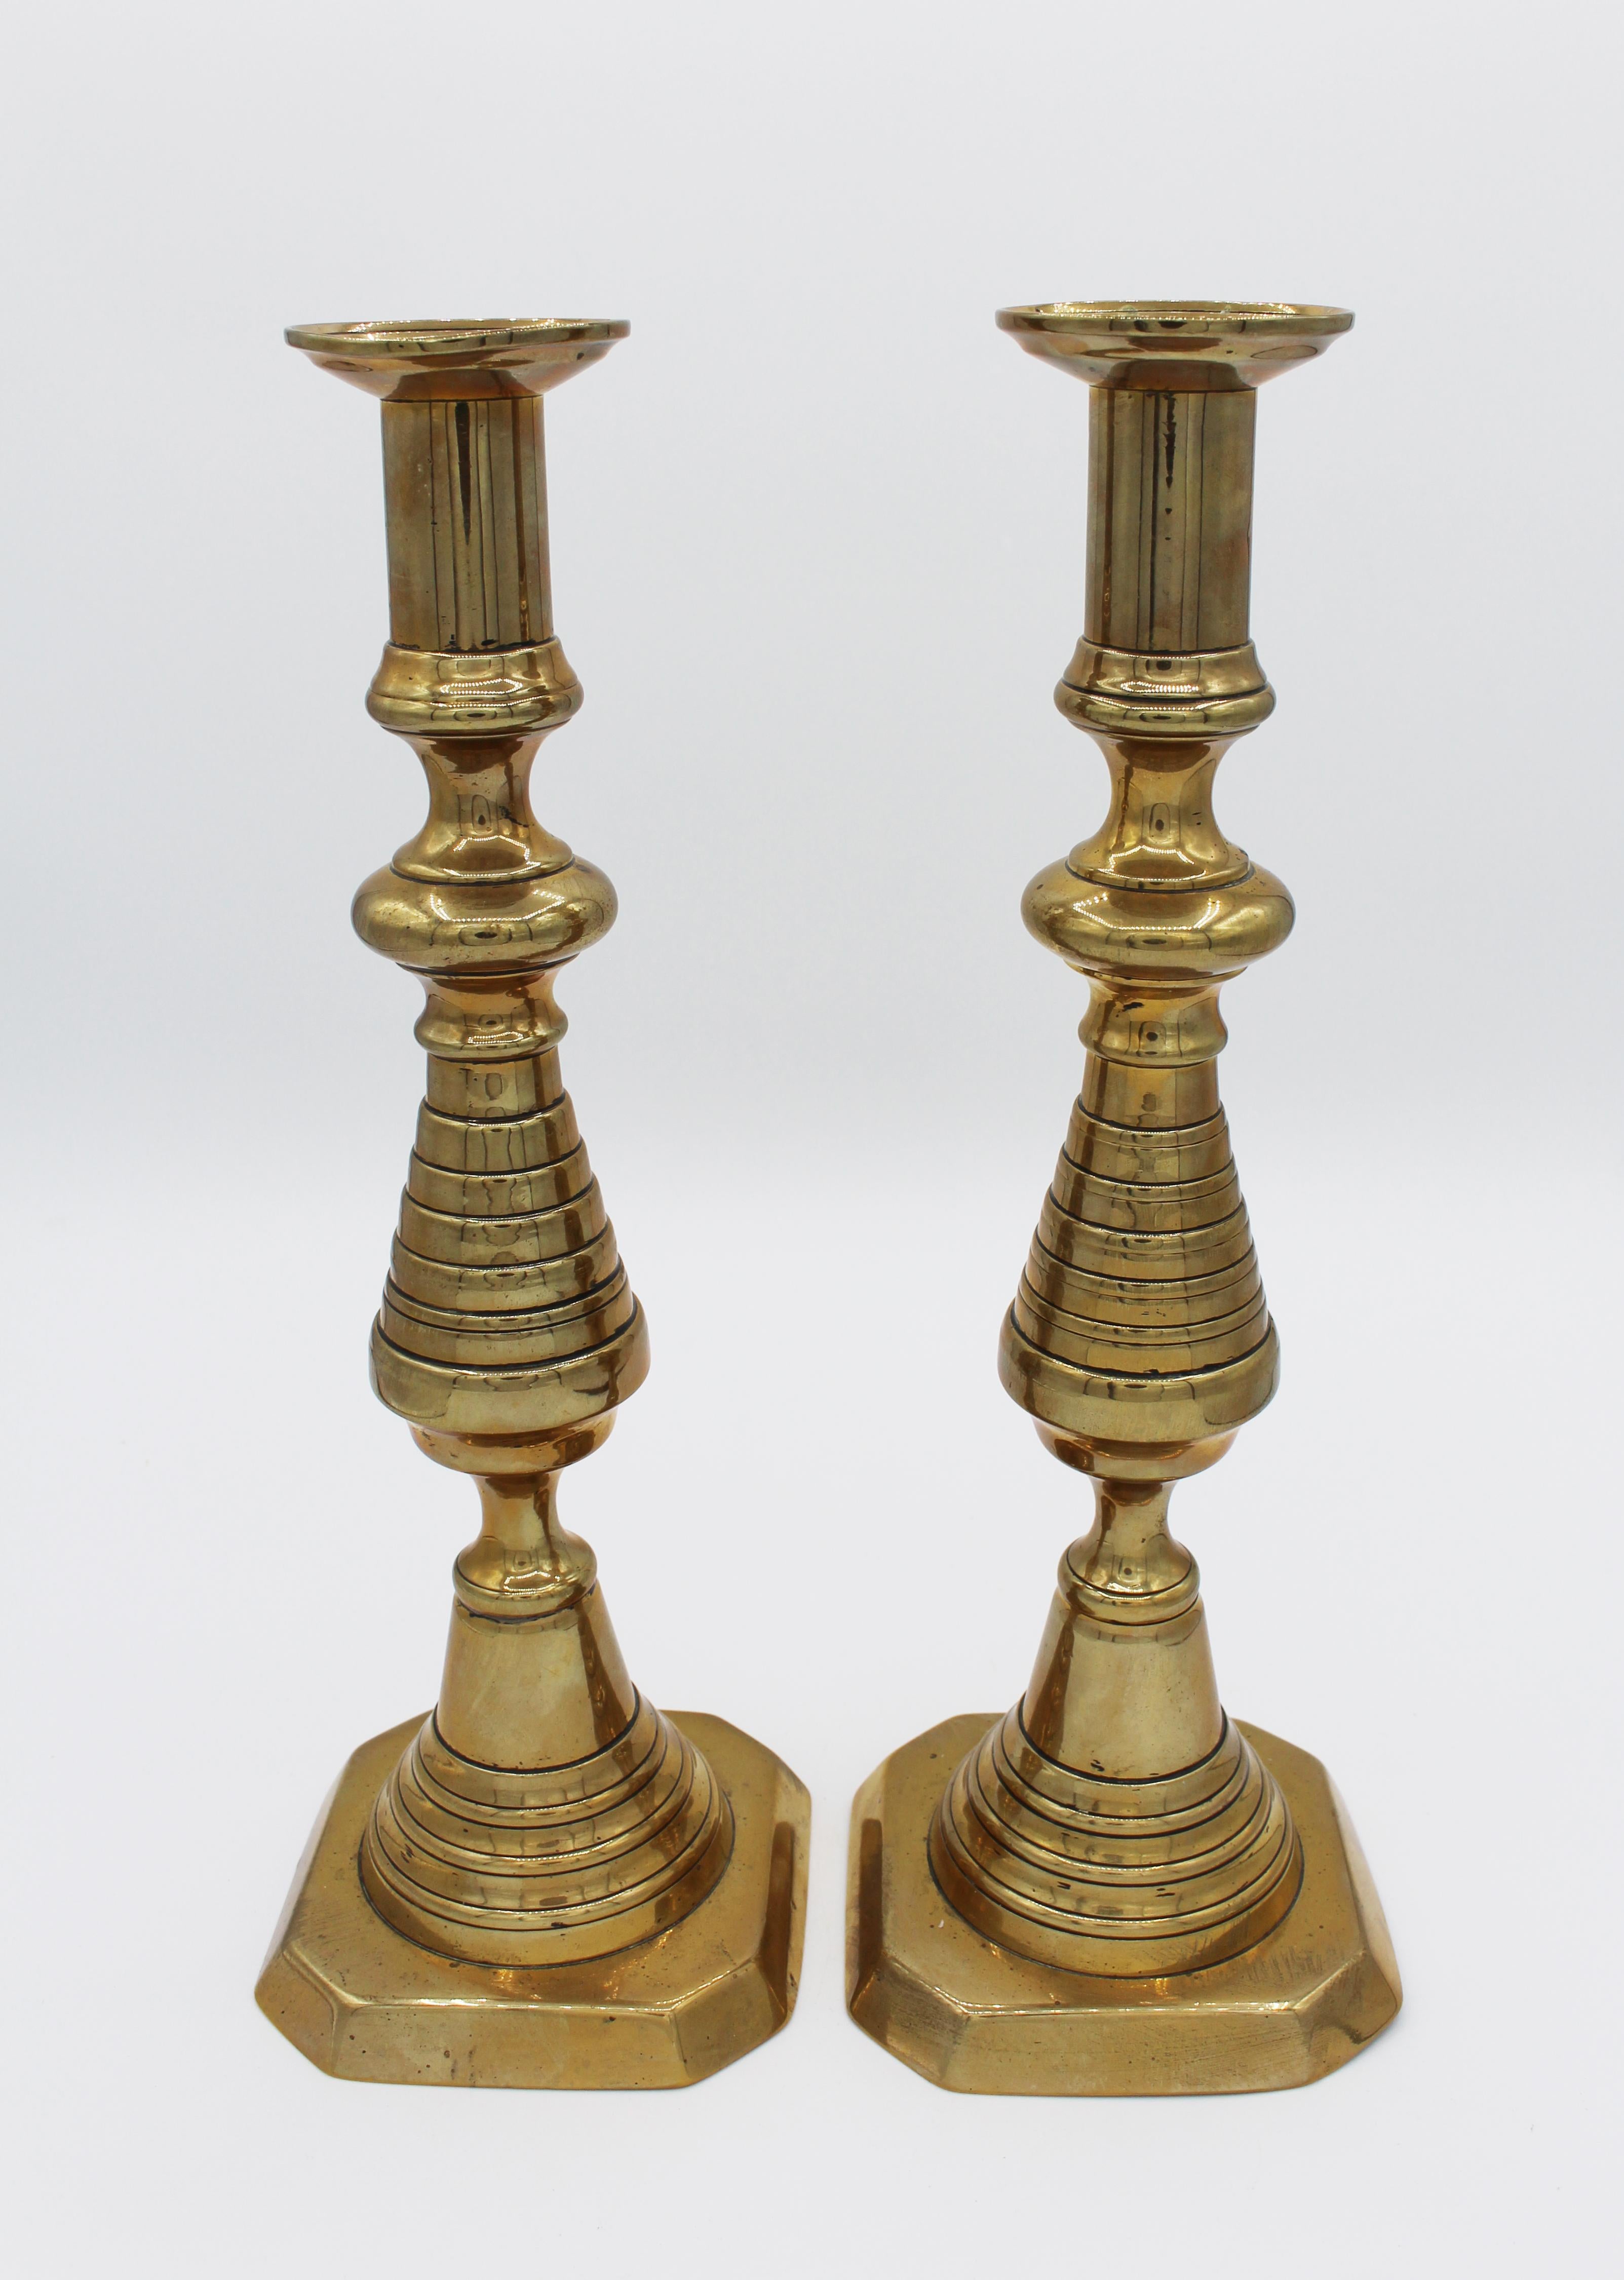 Une belle paire de chandeliers en laiton de grande taille et audacieuse, vers 1860, anglais. Forme de ruche classique en laiton inversé. Tous deux sont dotés de mécanismes de tige poussoir insérés dans la tige. Une base est légèrement usée.